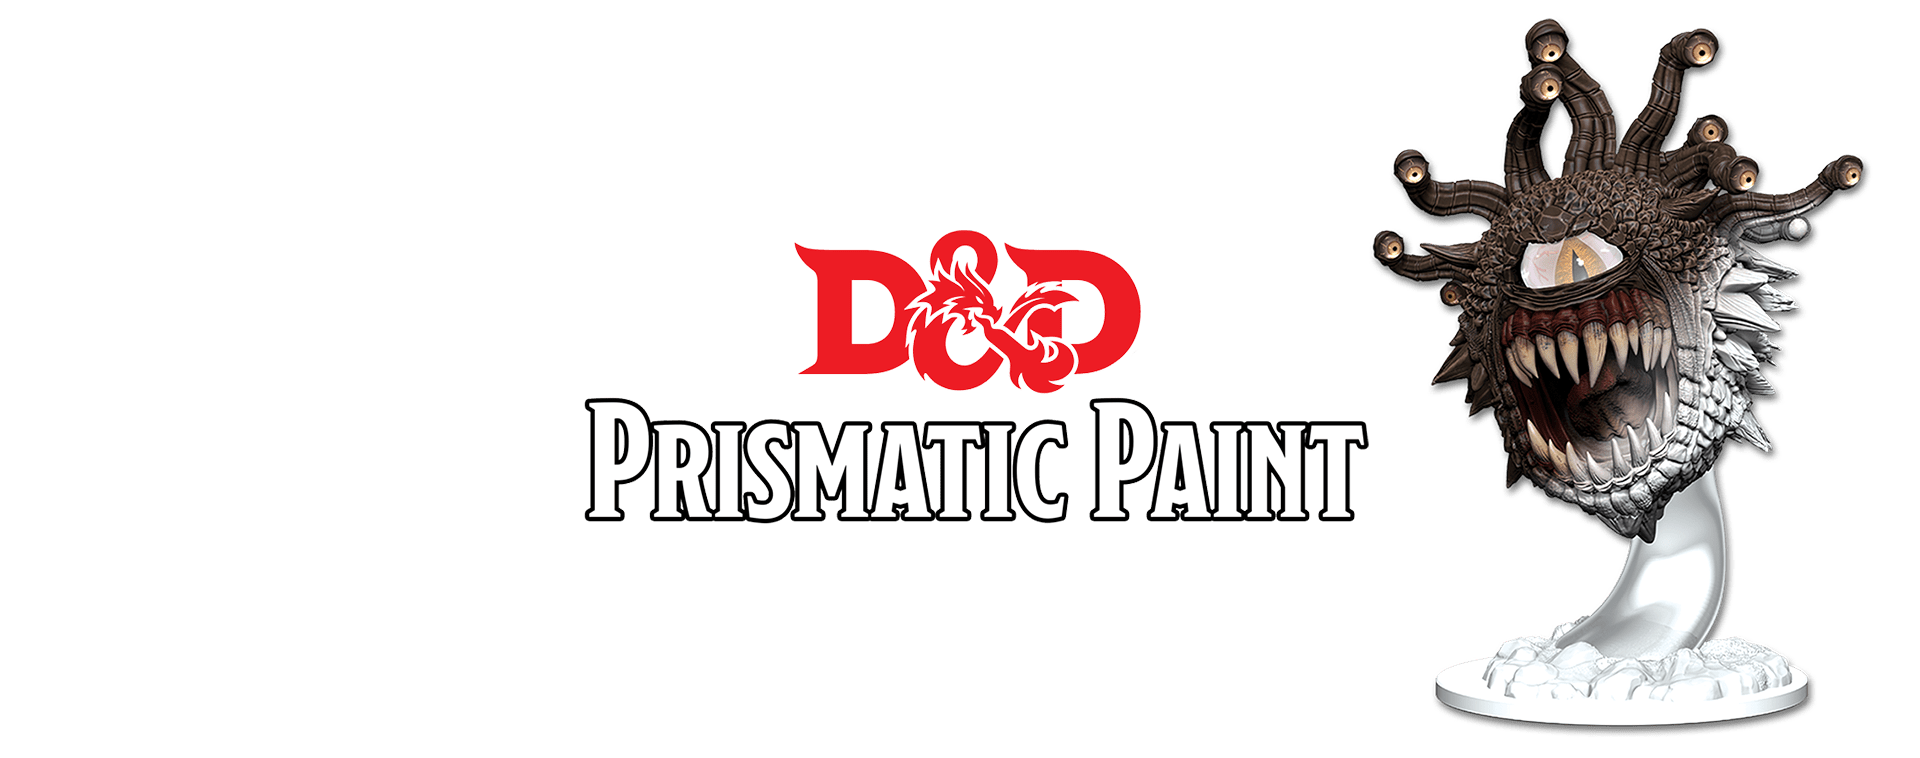 Paint: Vallejo - Paint Sets D&D Prismatic Paint: Basic Starter Paint Case